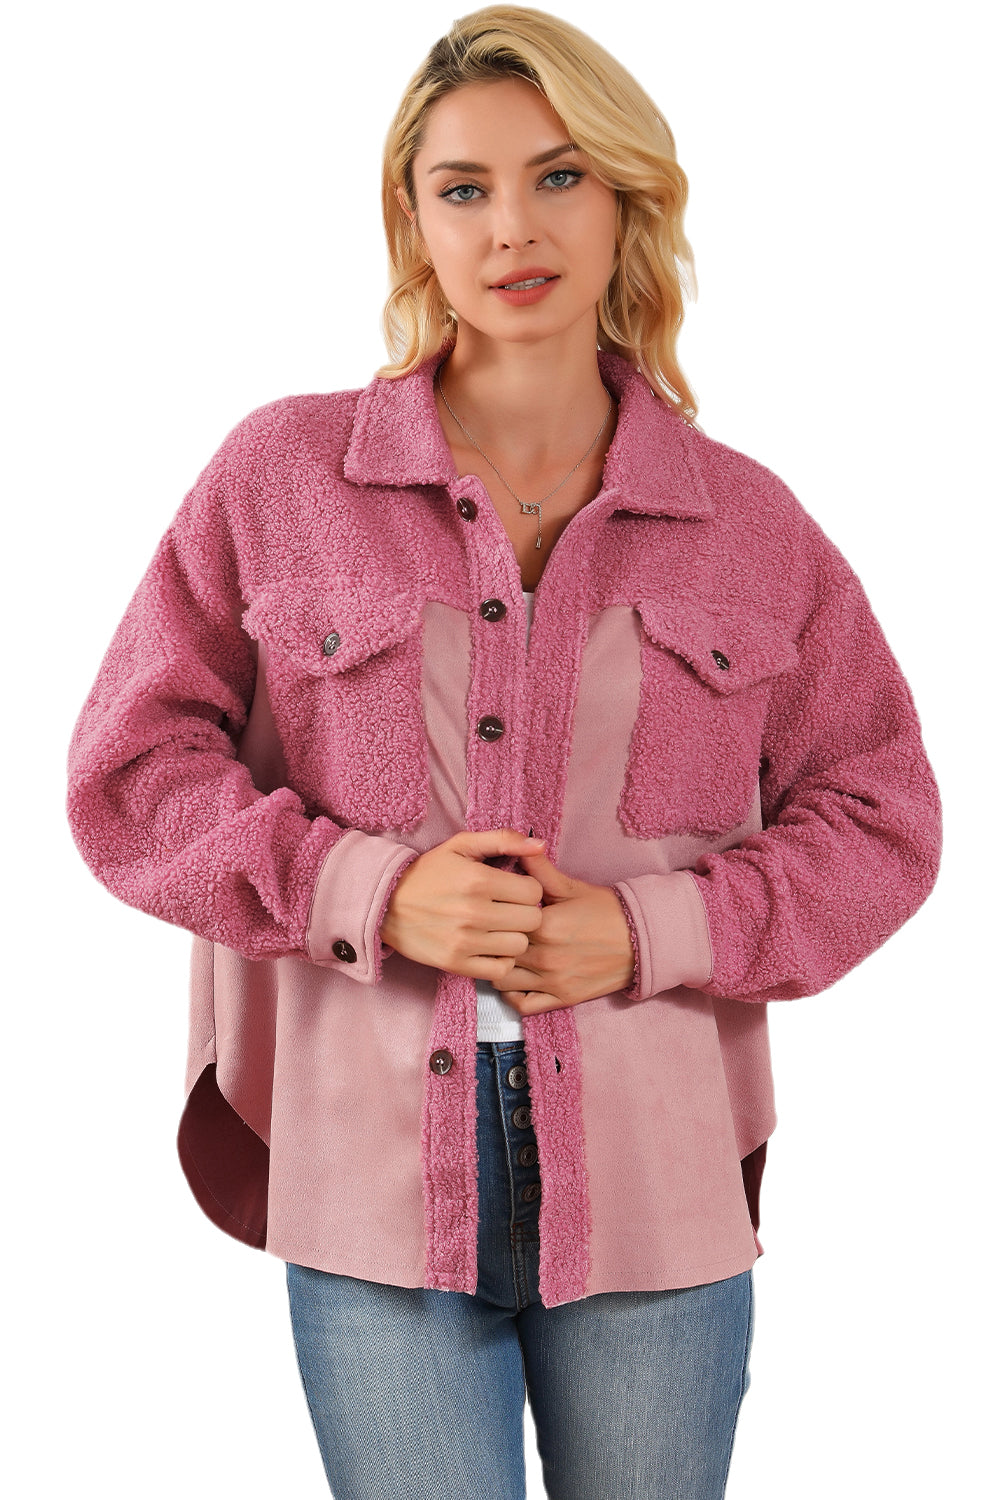 Rosa Colorblock-Sherpa-Jacke mit Knopfleiste und Pattentasche